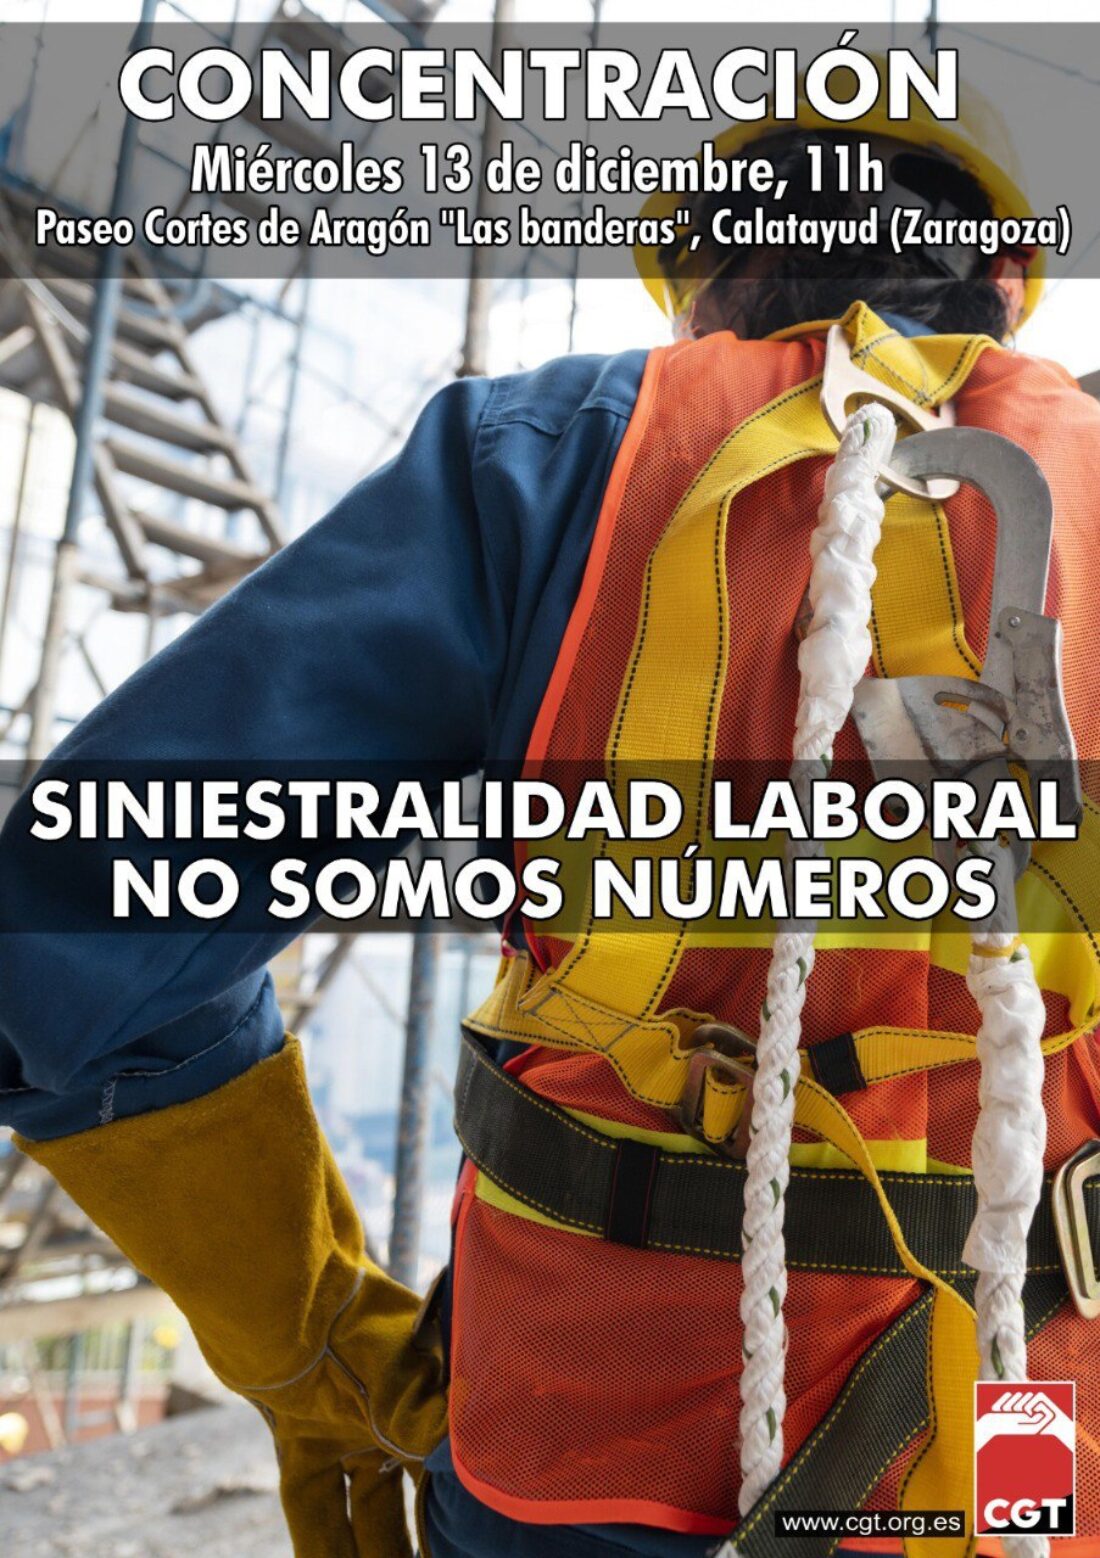 CGT se manifestara el próximo 13 de diciembre en Calatayud dentro del marco de movilizaciones en todo el Estado español contra la siniestralidad laboral